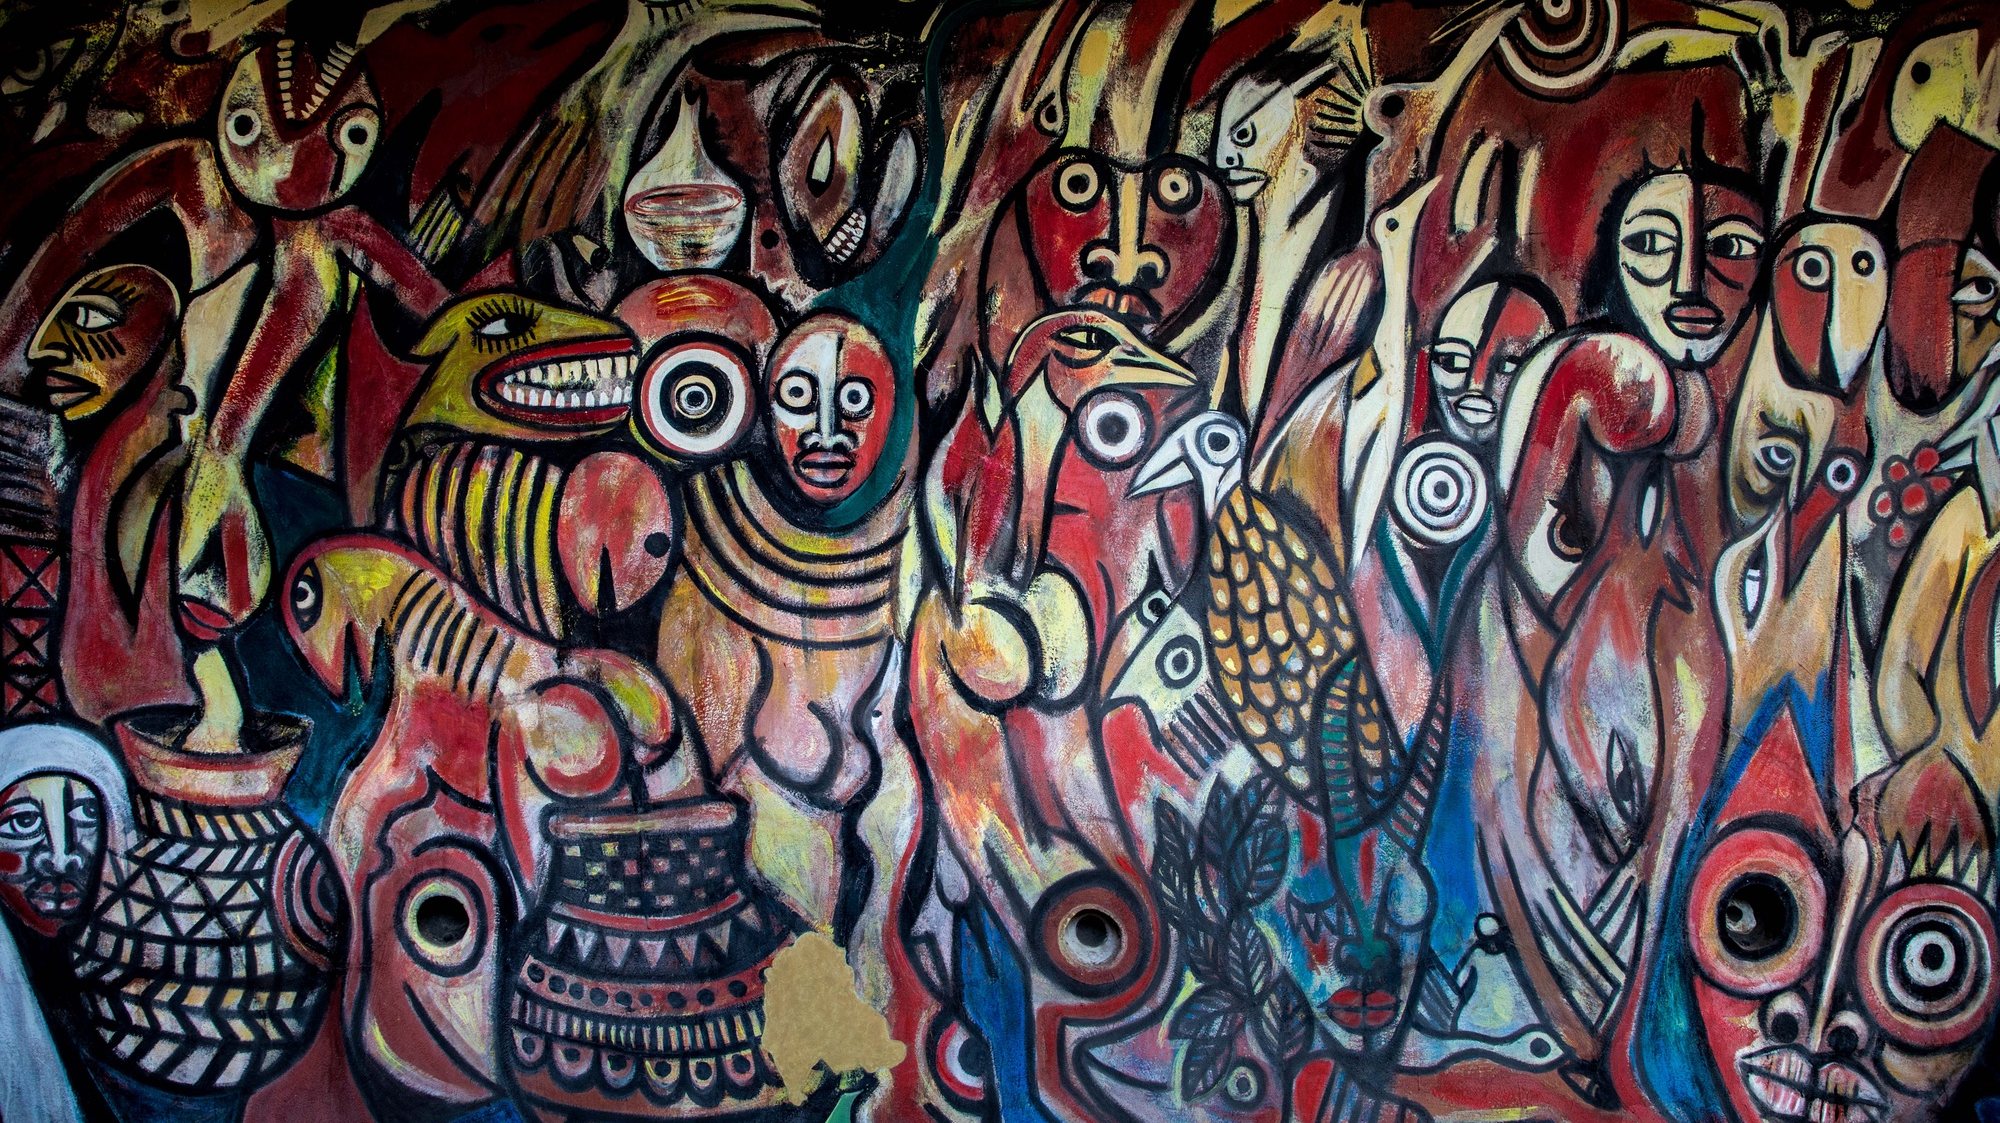 Cerimónia de inauguração do mural de Malangatana “O Homem e a Natureza” no jardim do Museu de História Natural, Maputo, Moçambique, 30 de julho 2020. RICARDO FRANCO/LUSA